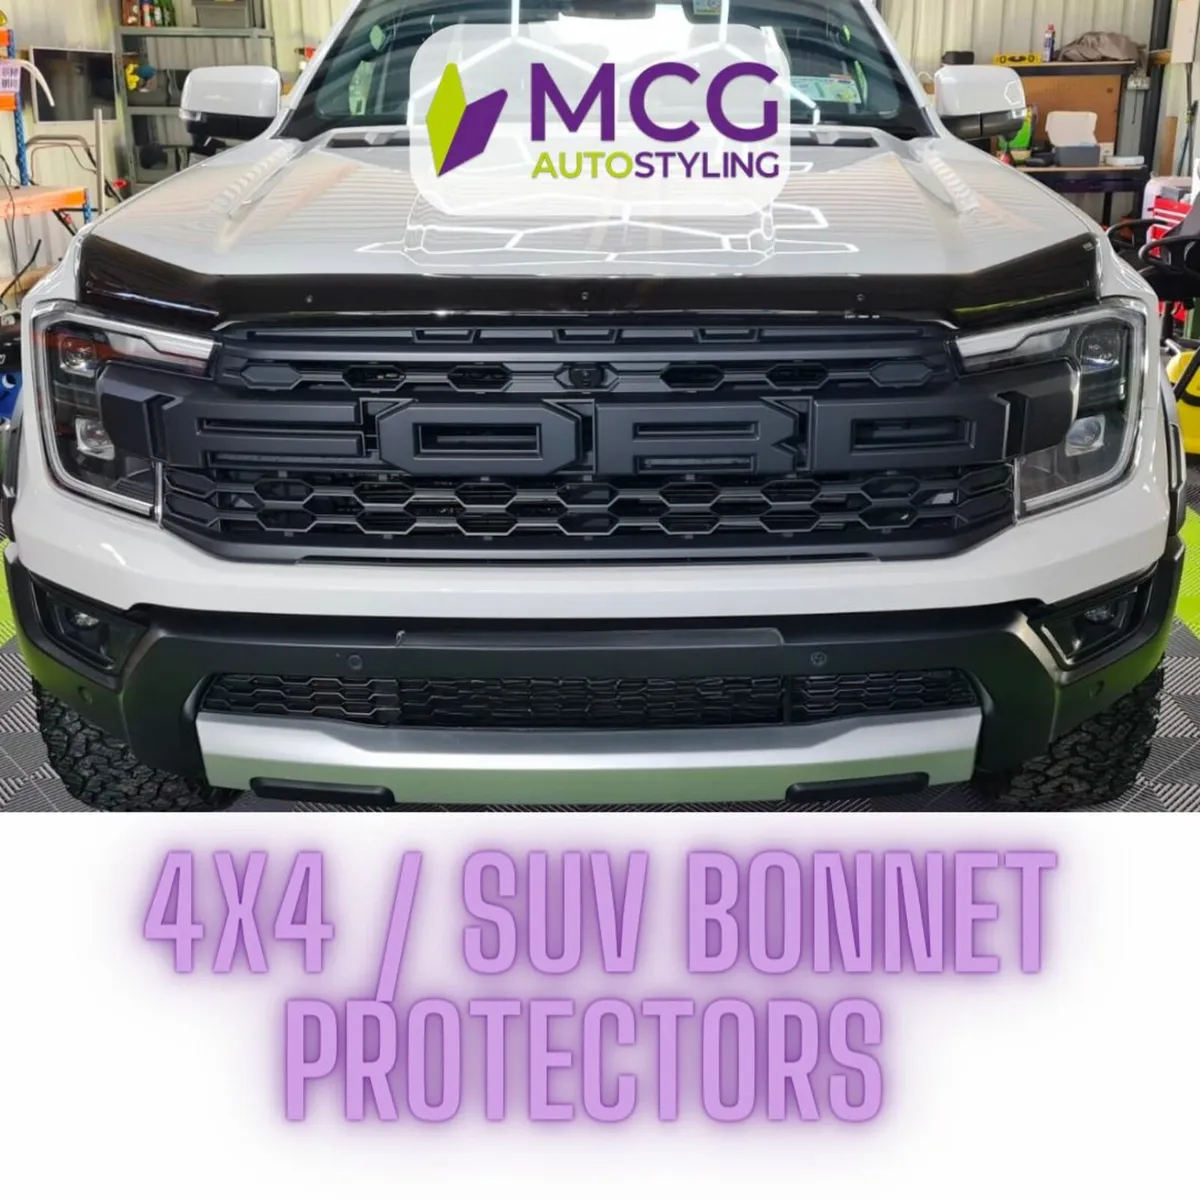 Van & 4x4 Bonnet Protectors - Image 1